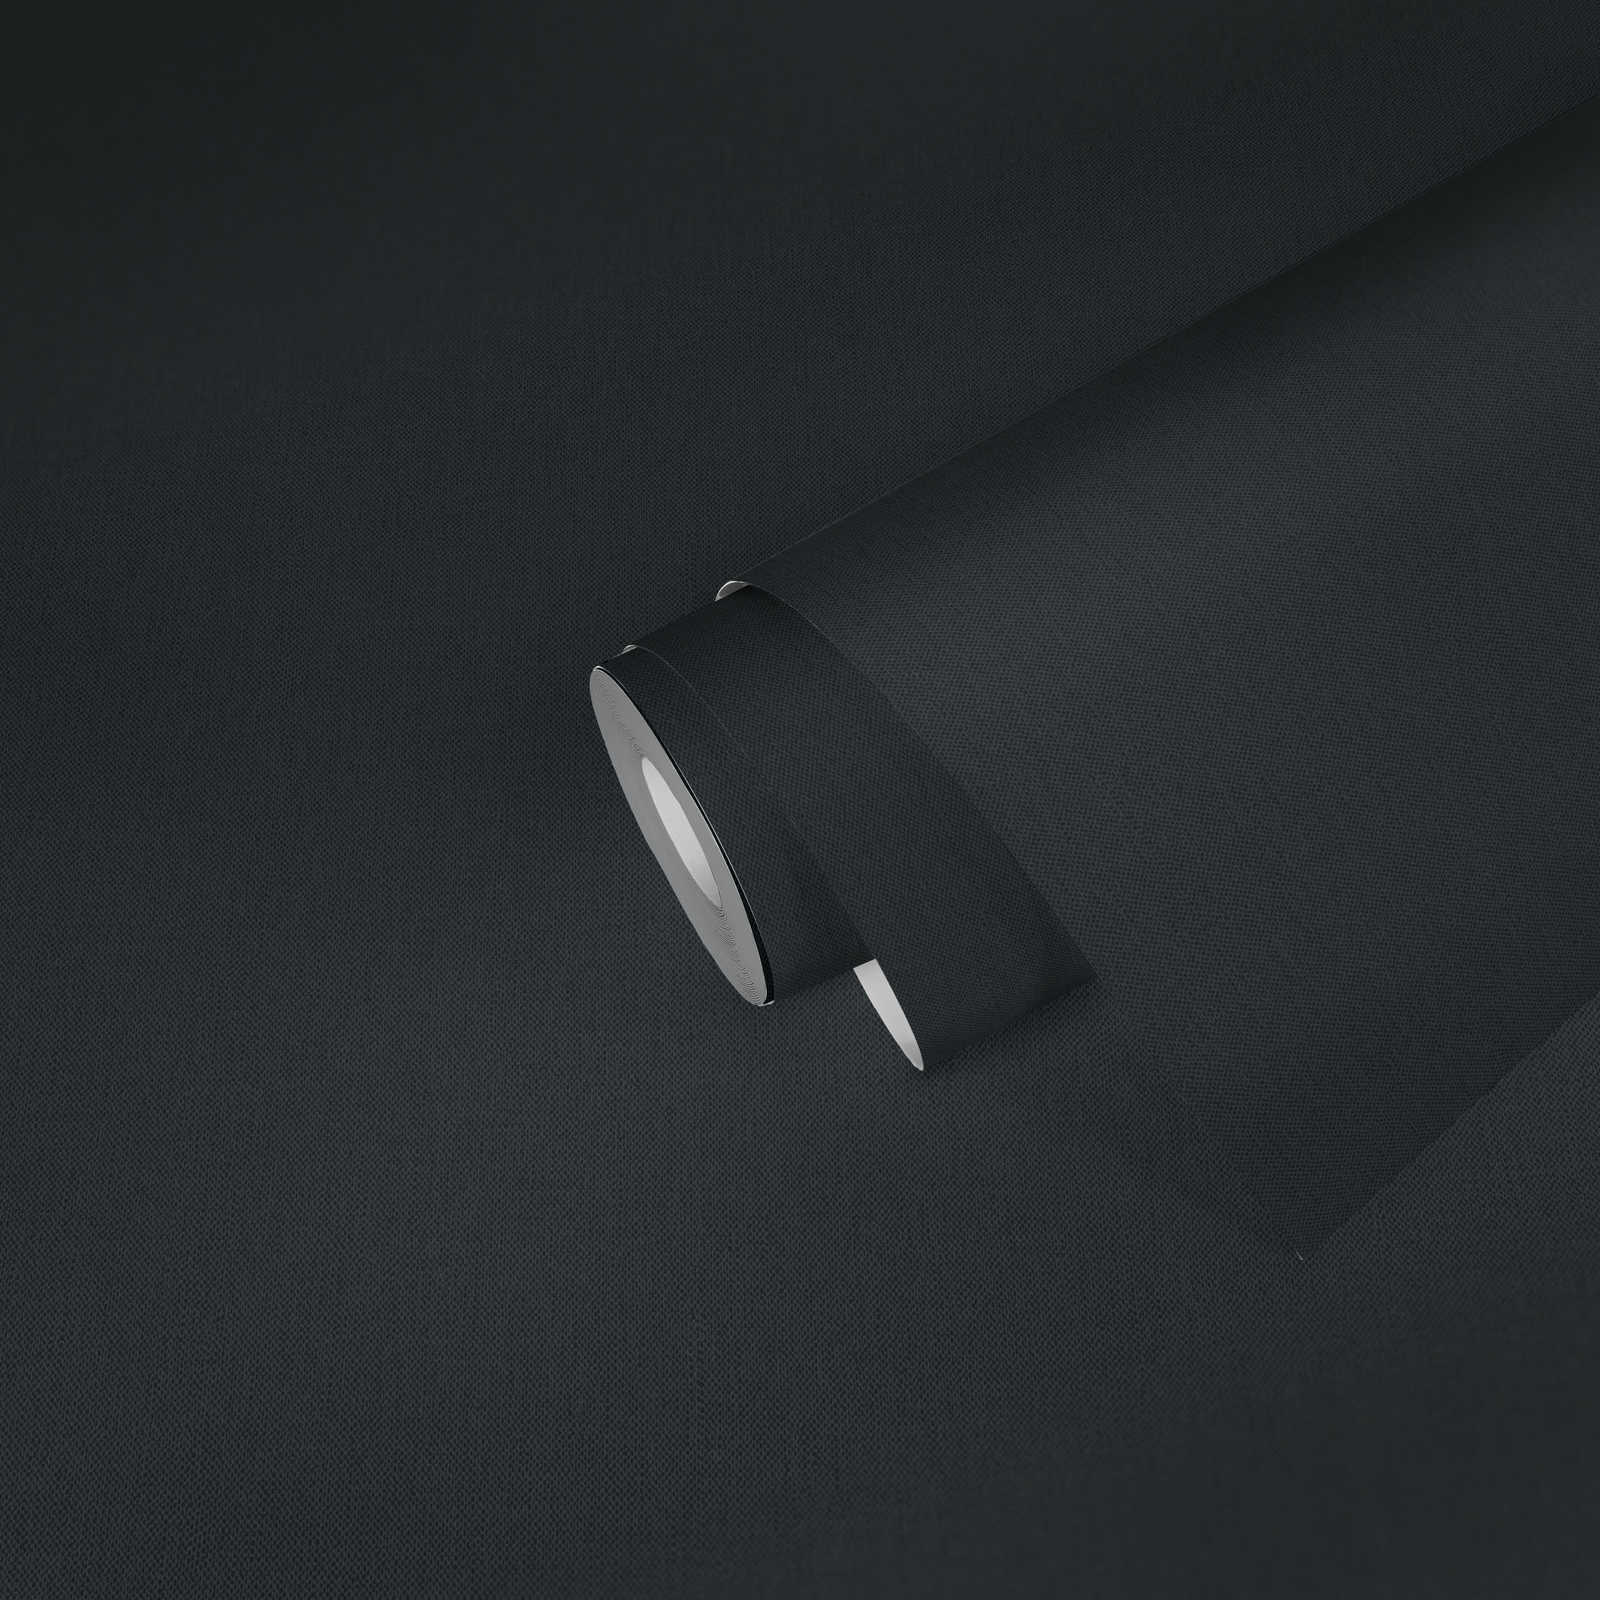             Papier peint Noir mat avec aspect lin & effet textile
        